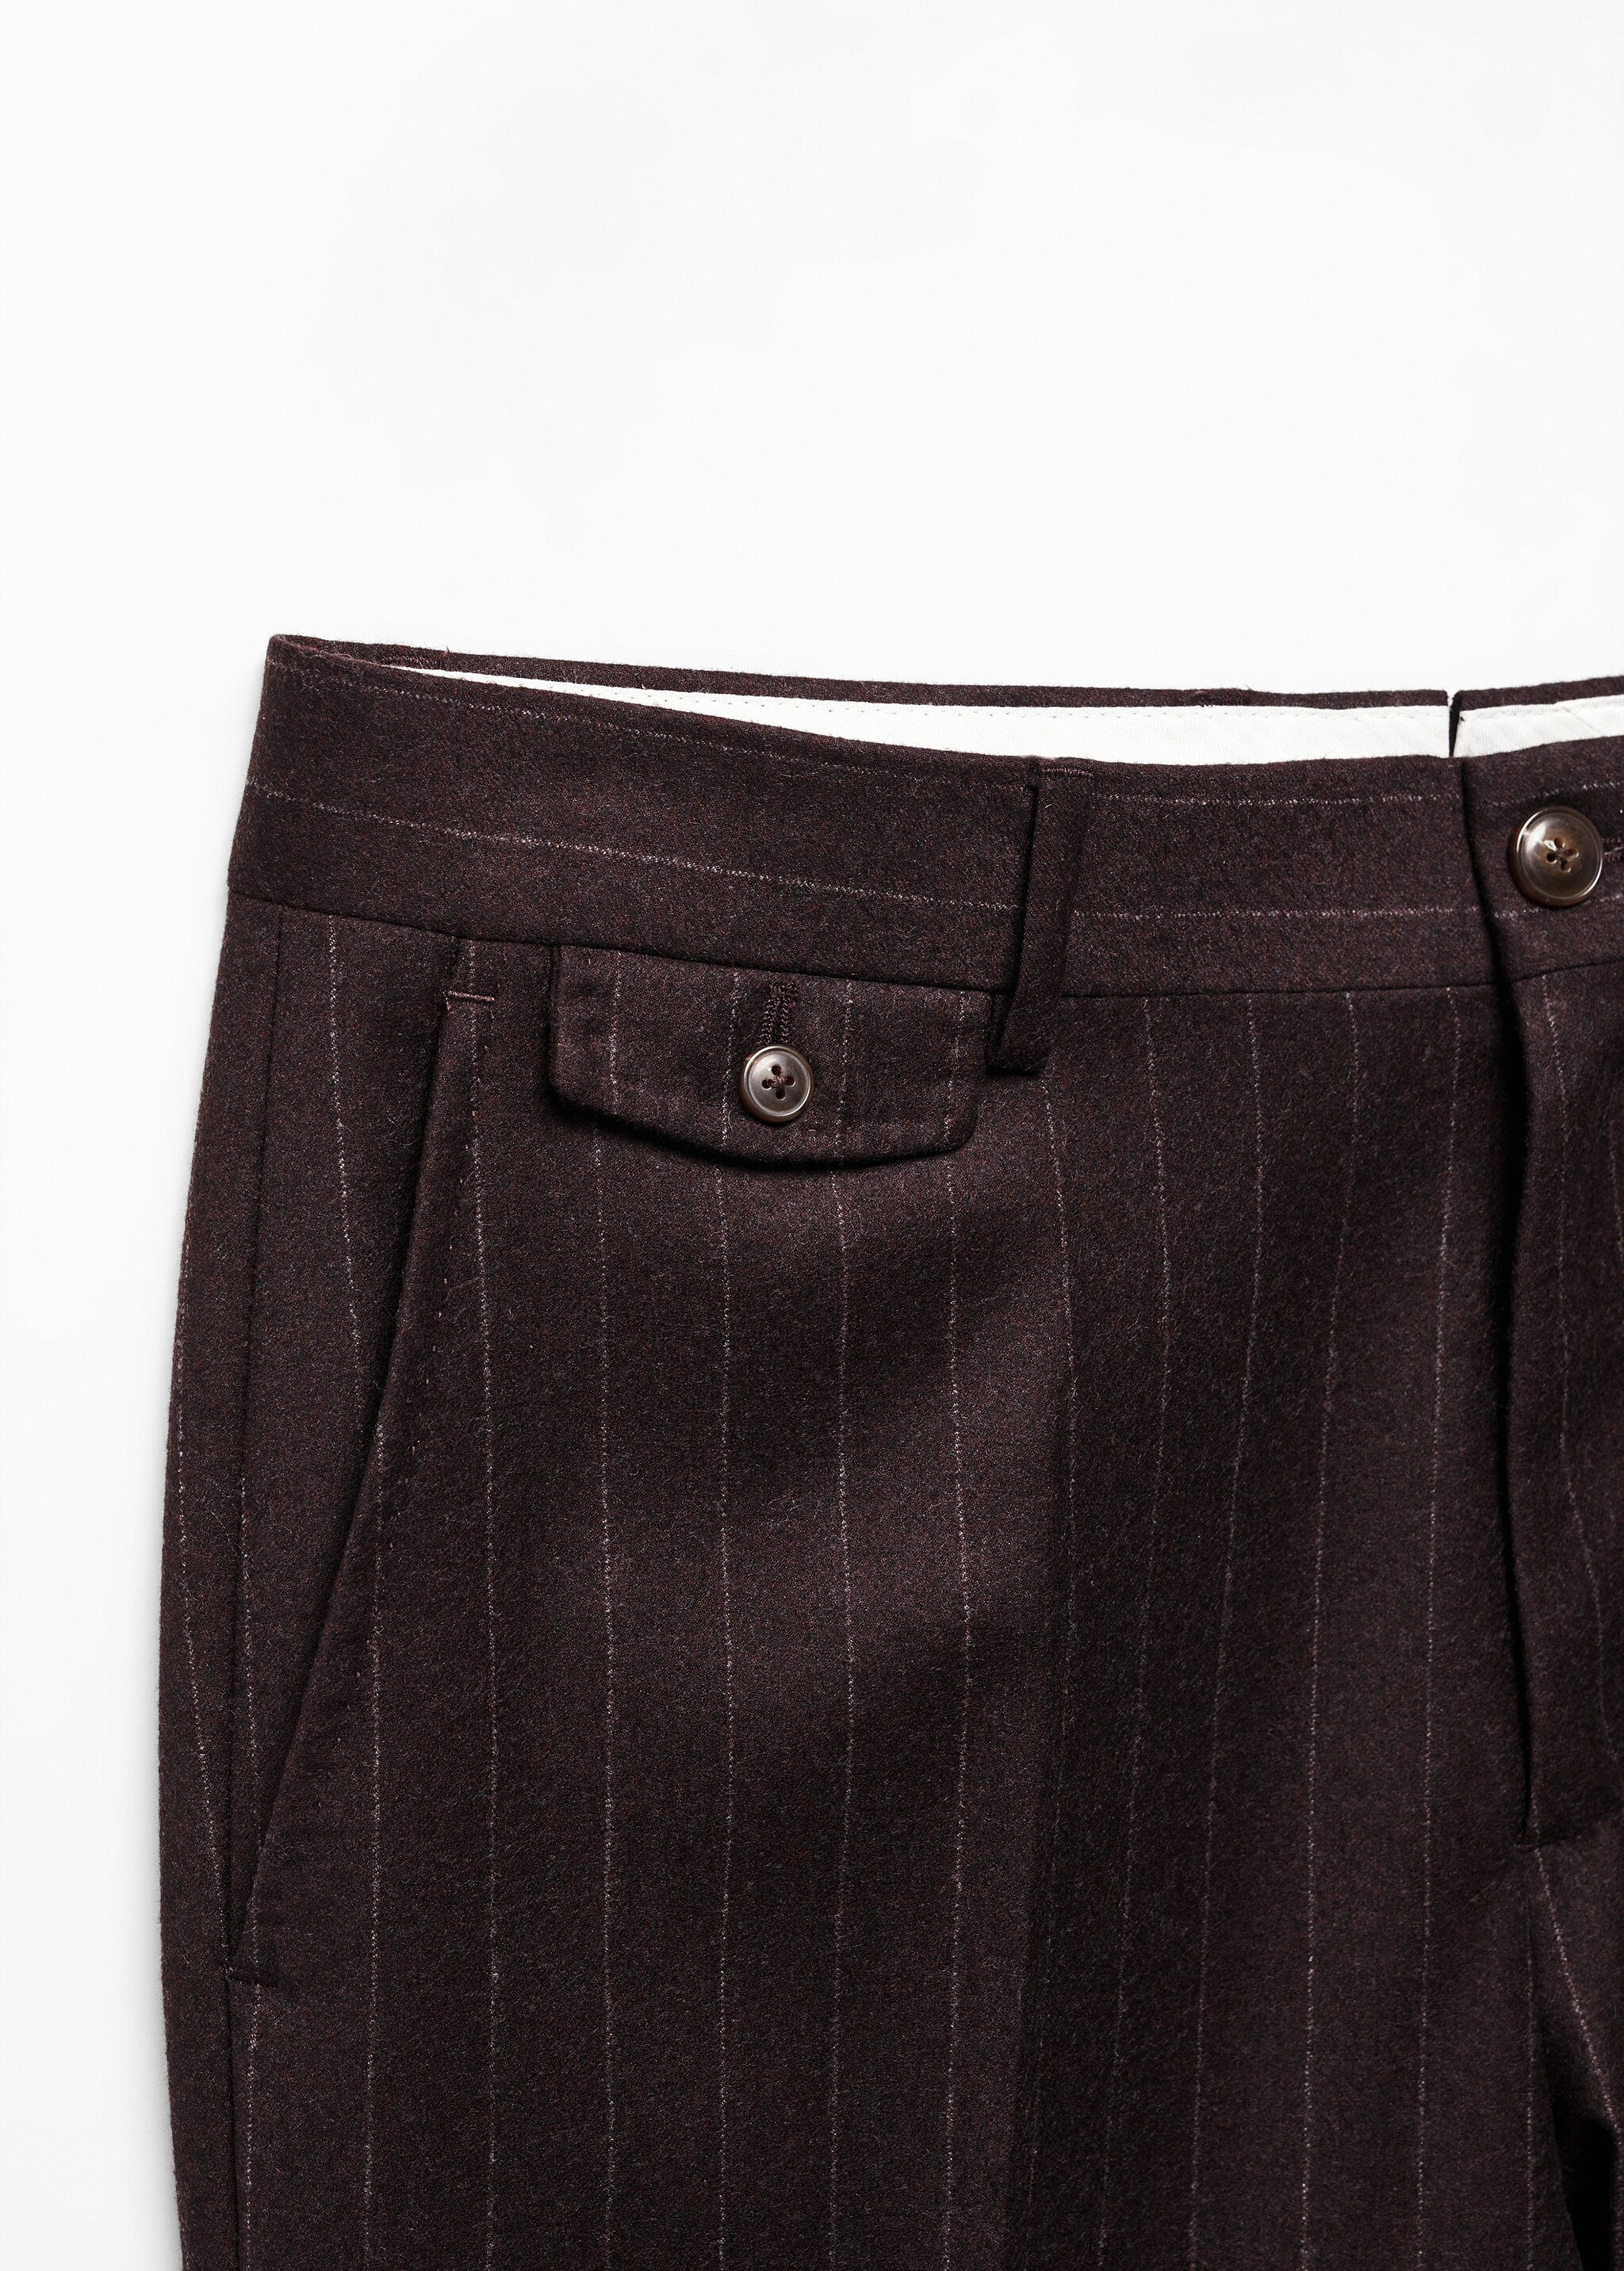 Pantaloni 100% lana vergine gessati - Dettaglio dell'articolo 8